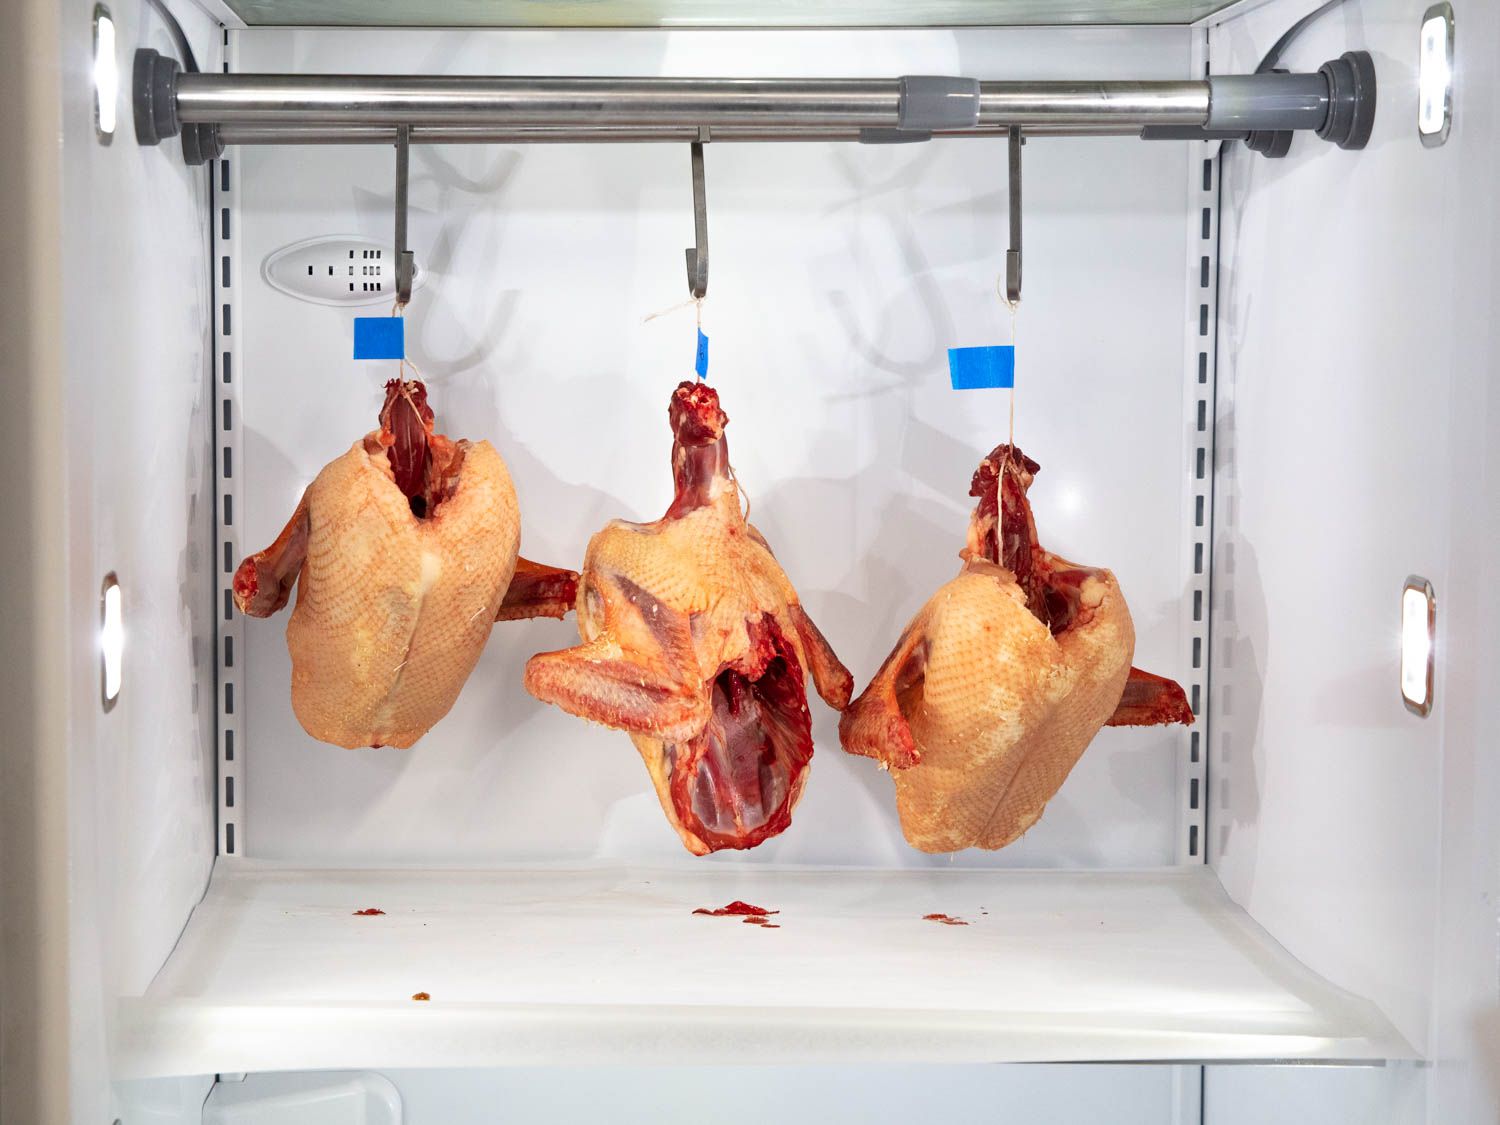 鸭子冠挂在冰箱第三天。